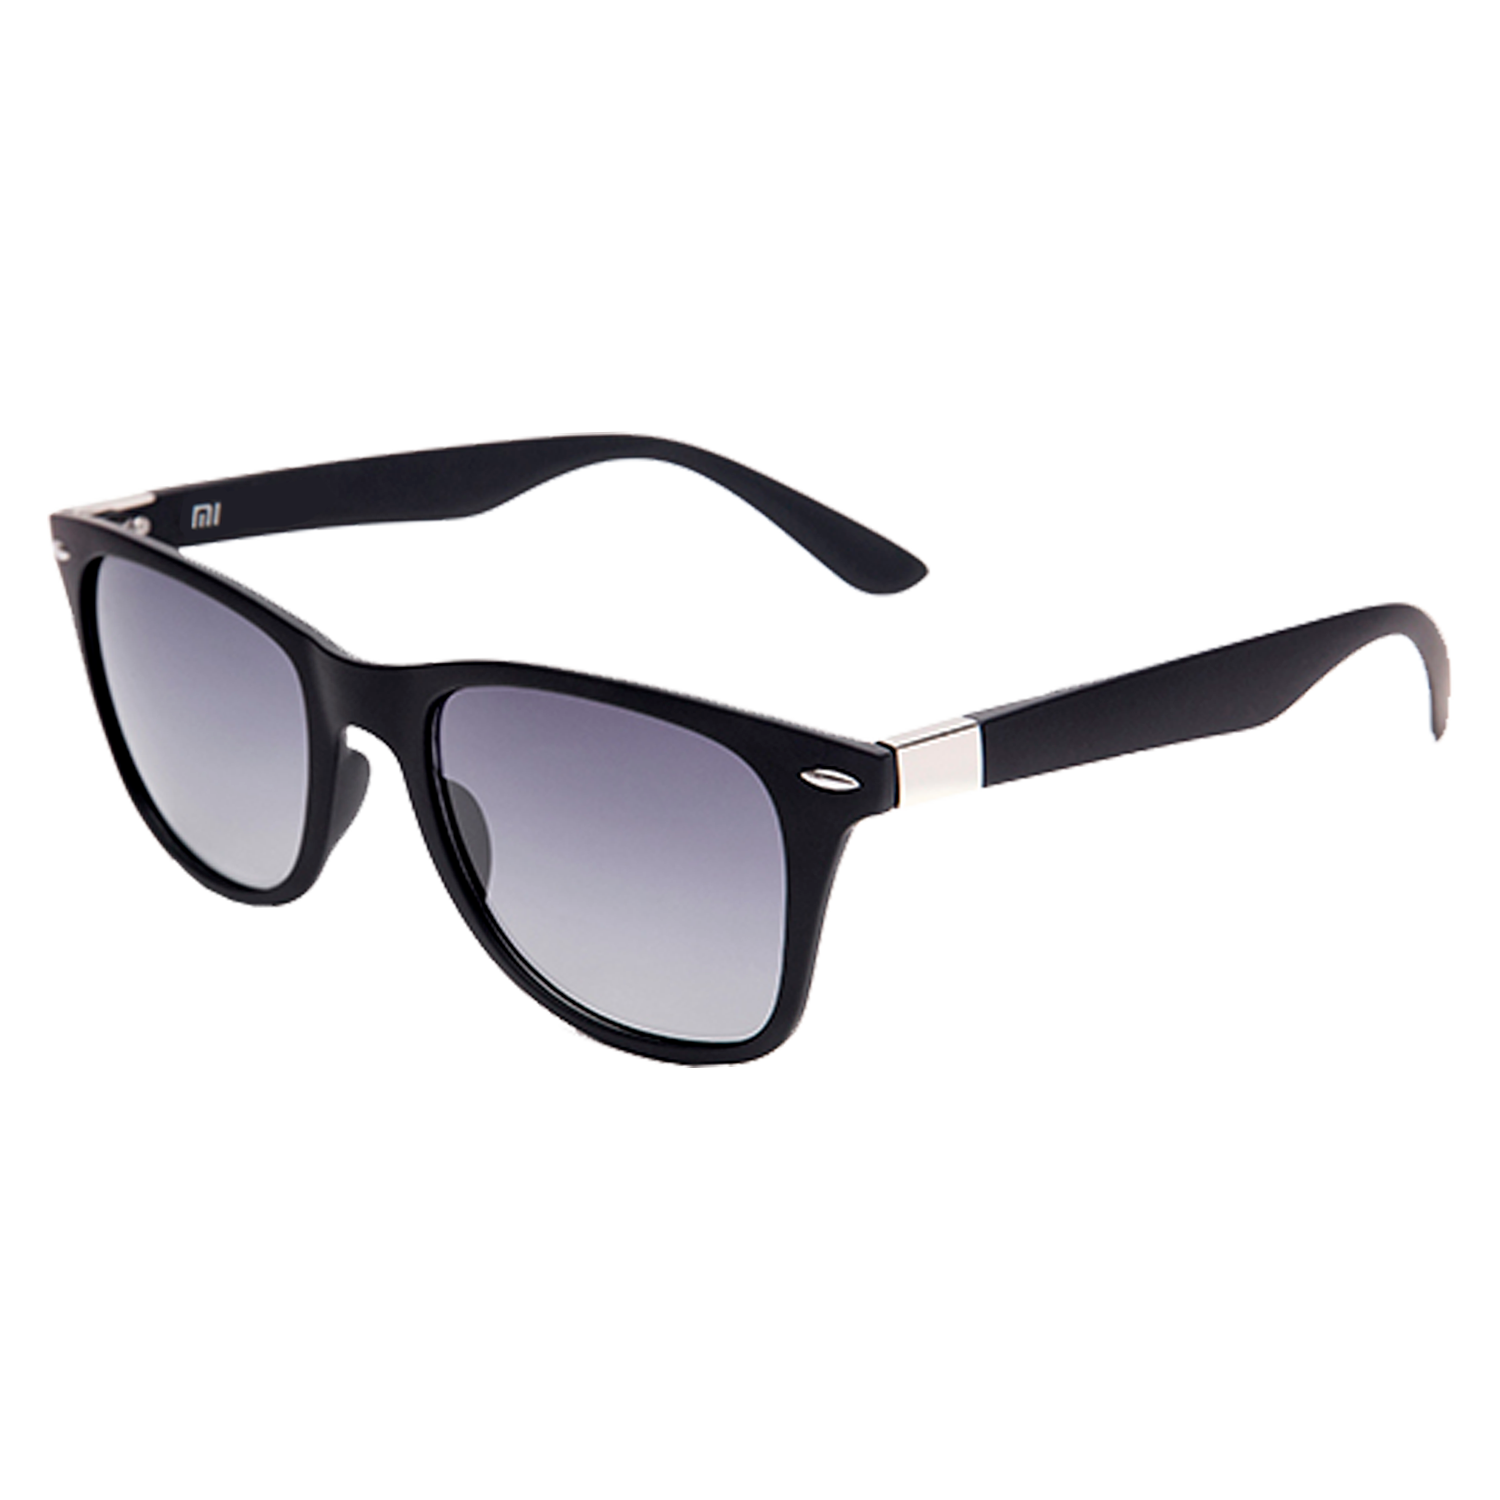 Óculos de Sol XMTL01TS Xiaomi Sunglasses Polarized Square - Azul e Preto